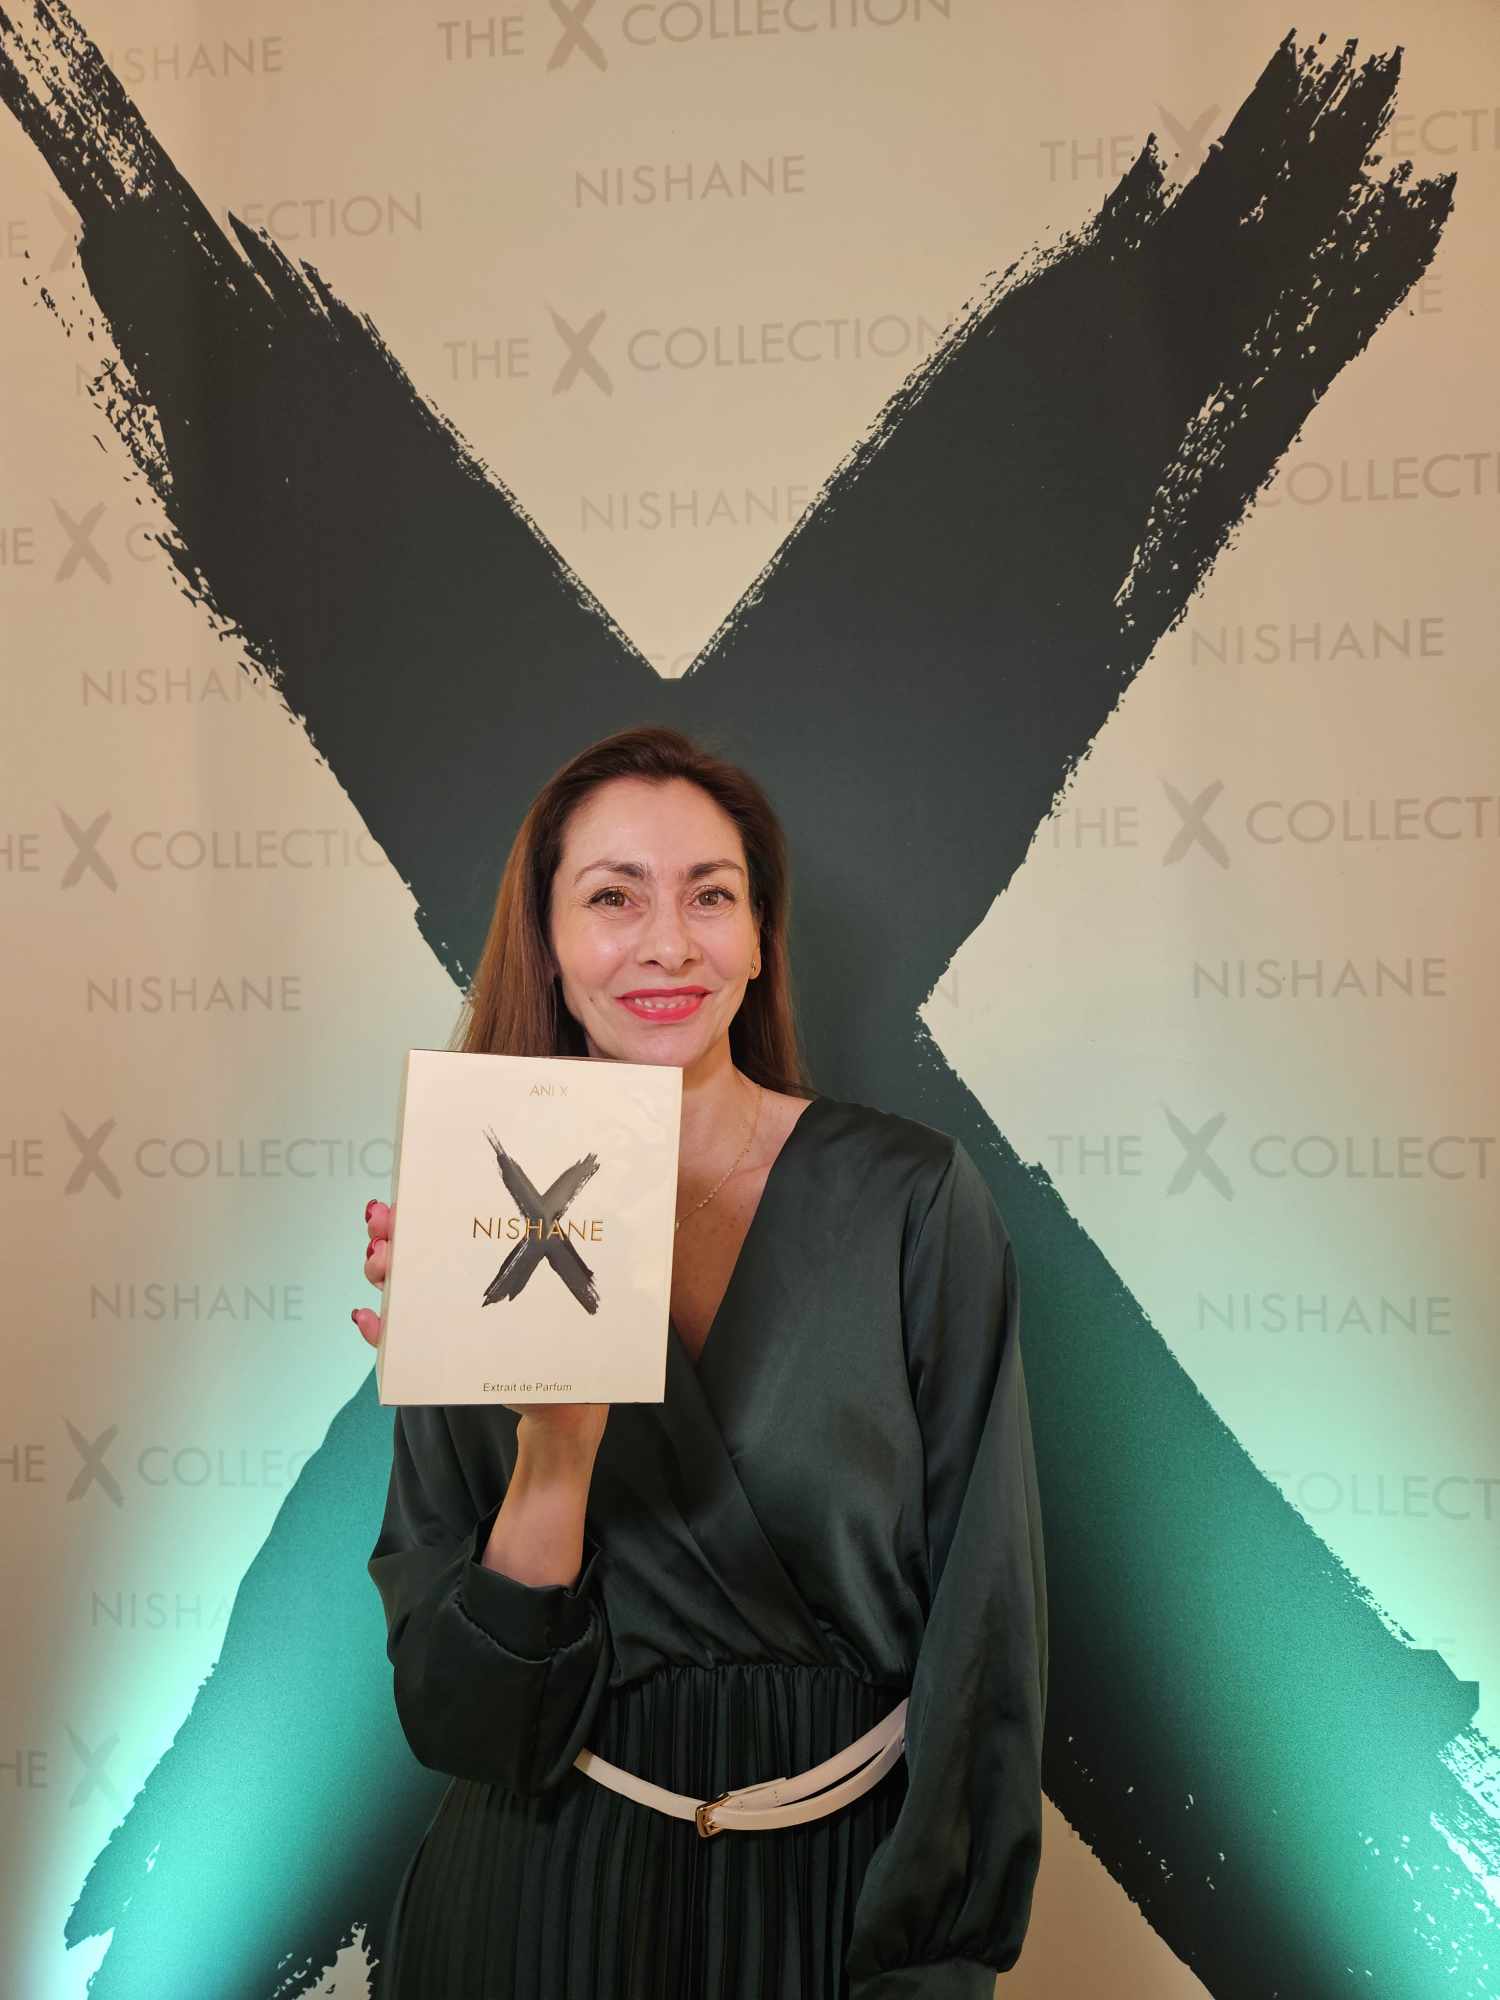 X - ez a jel az újdonságokon